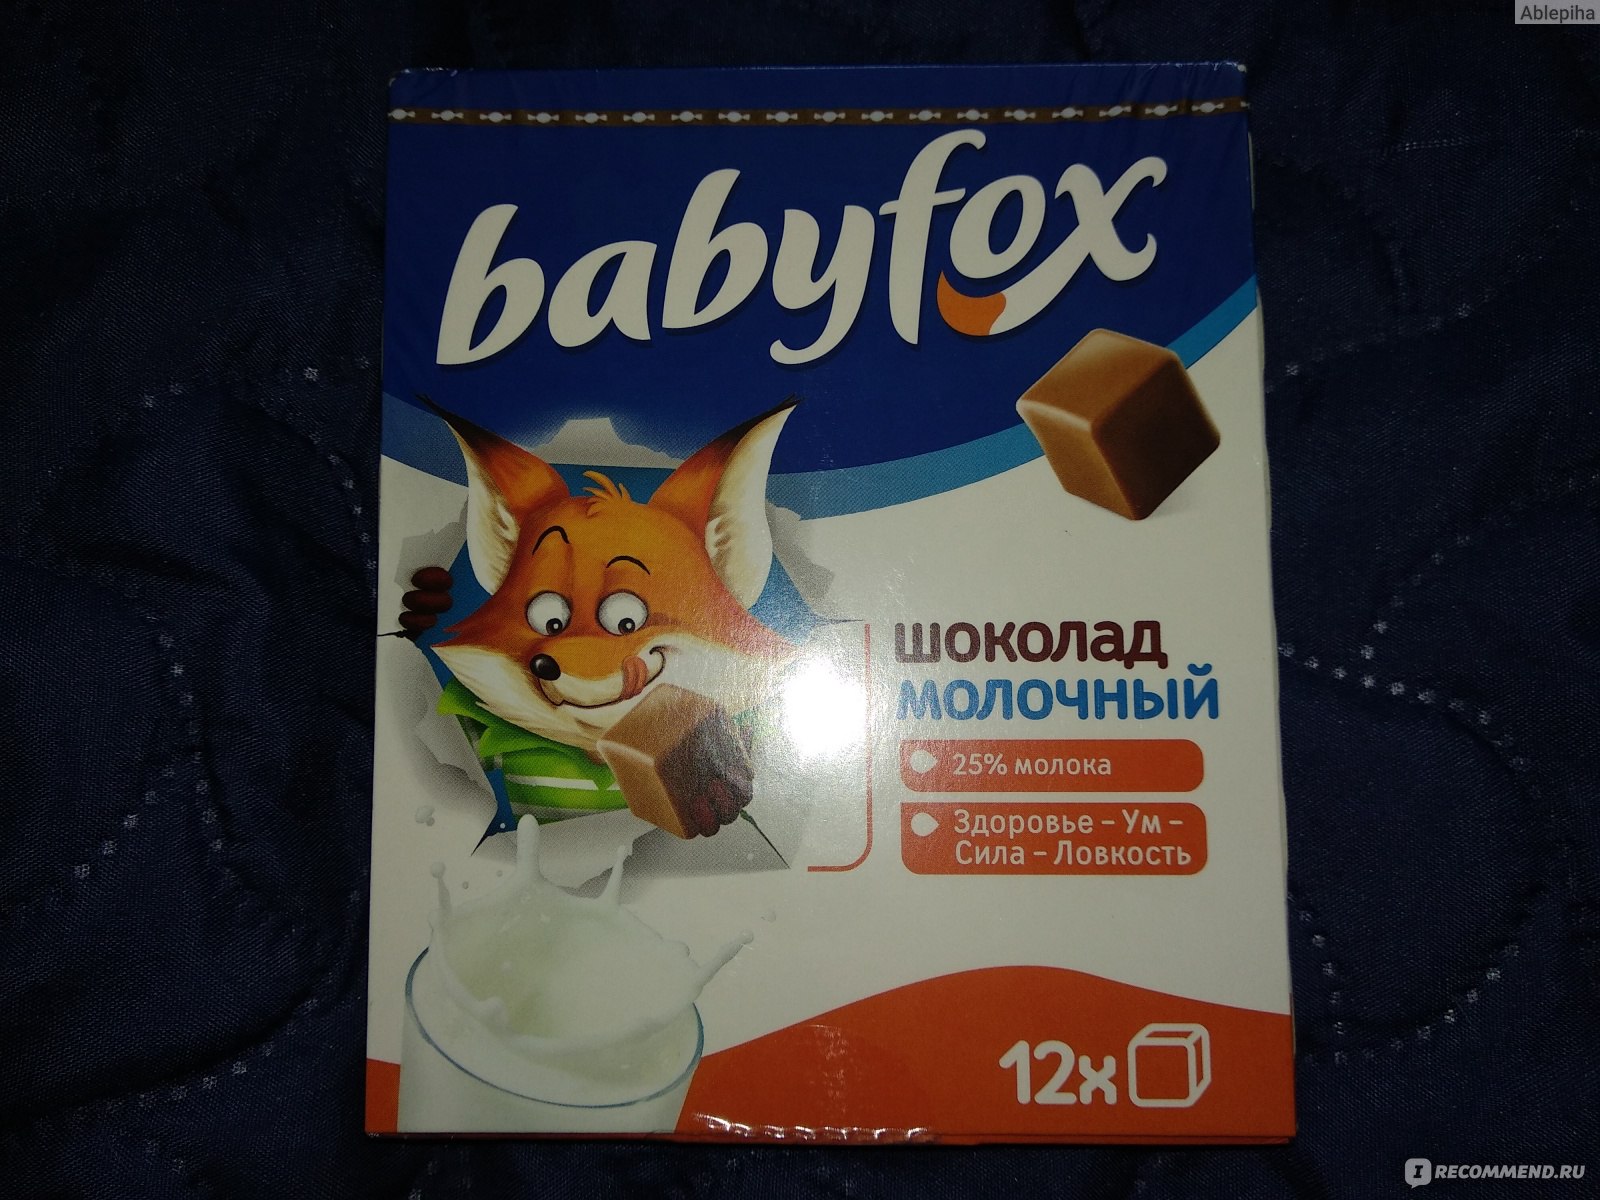 Где Можно Купить Шоколад Babyfox